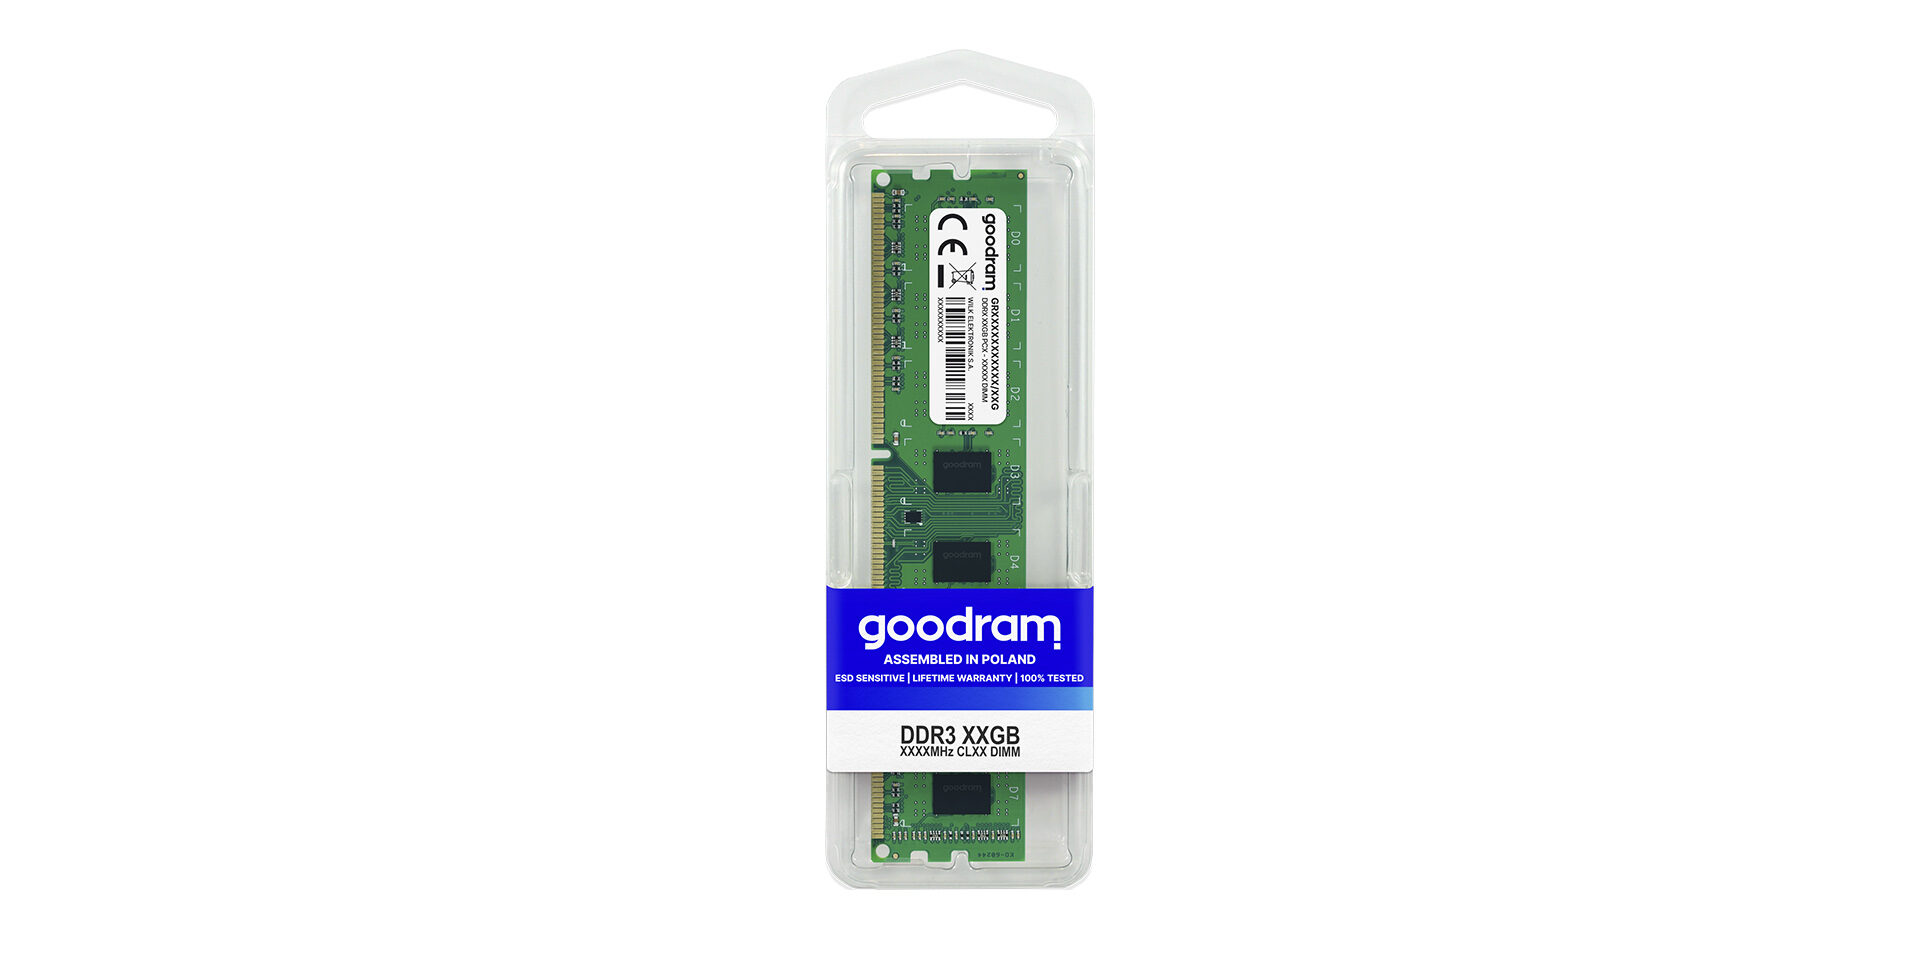 SSD DDR3 DIMM marki Goodram w opakowaniu